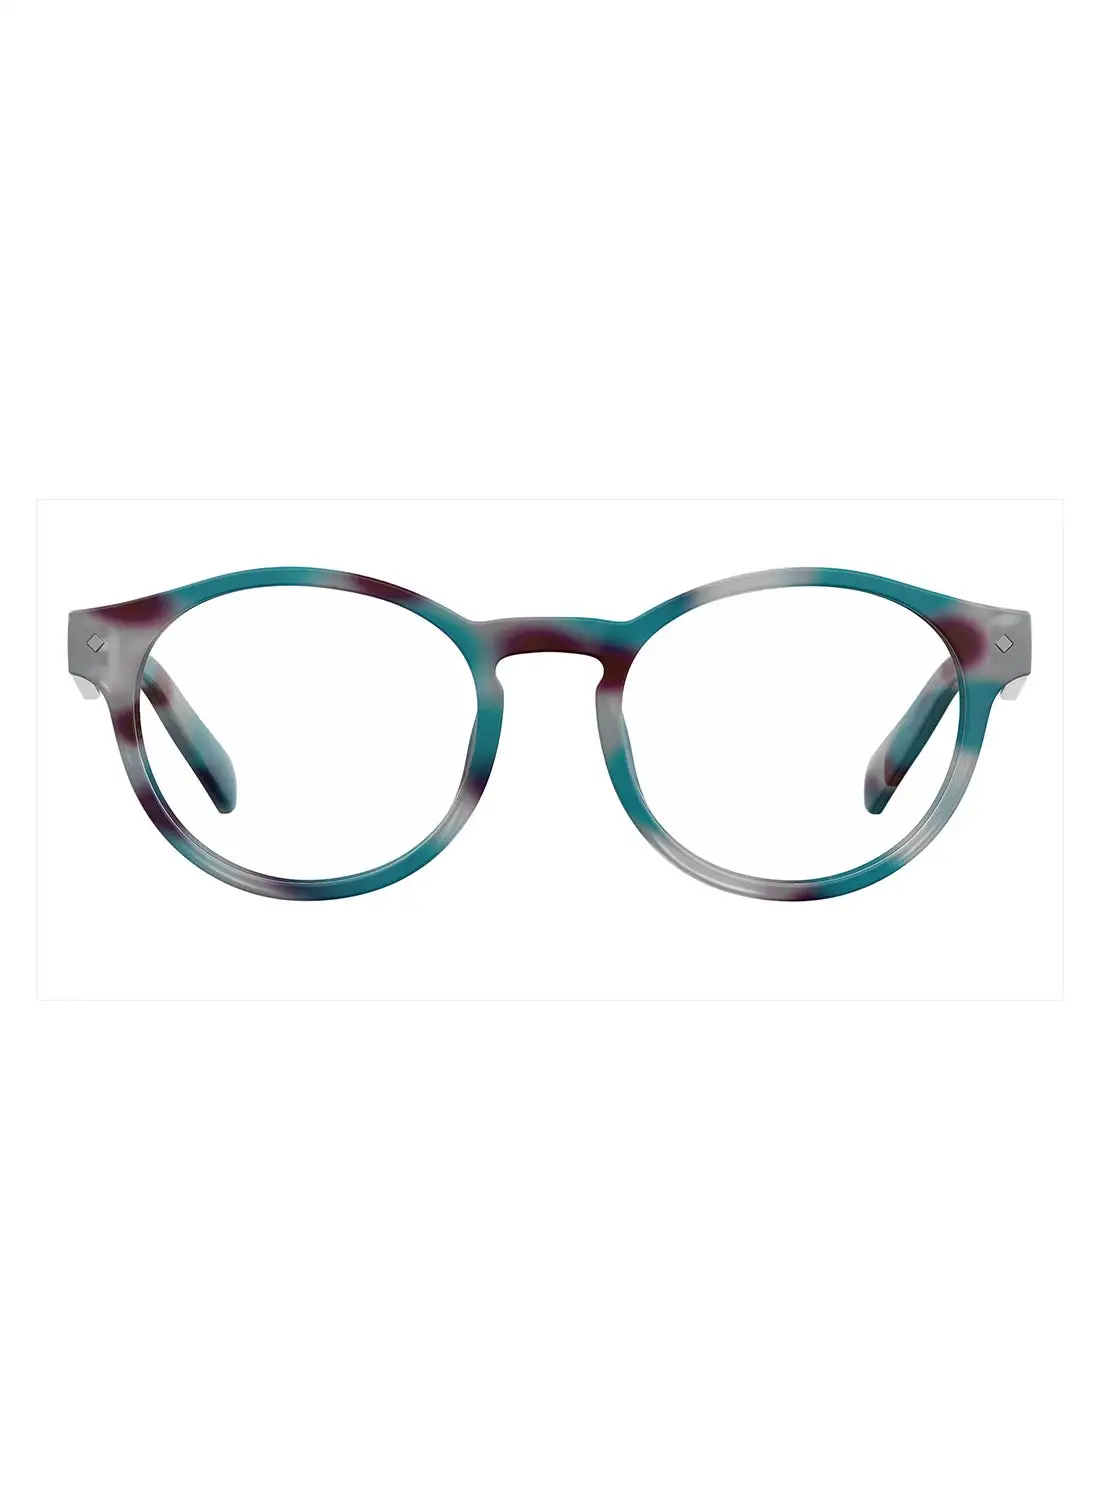 Polaroid Unisex Oval Reading Glasses - Pld 0021/R Blue Havana 49 - Lens Size: 49 Mm